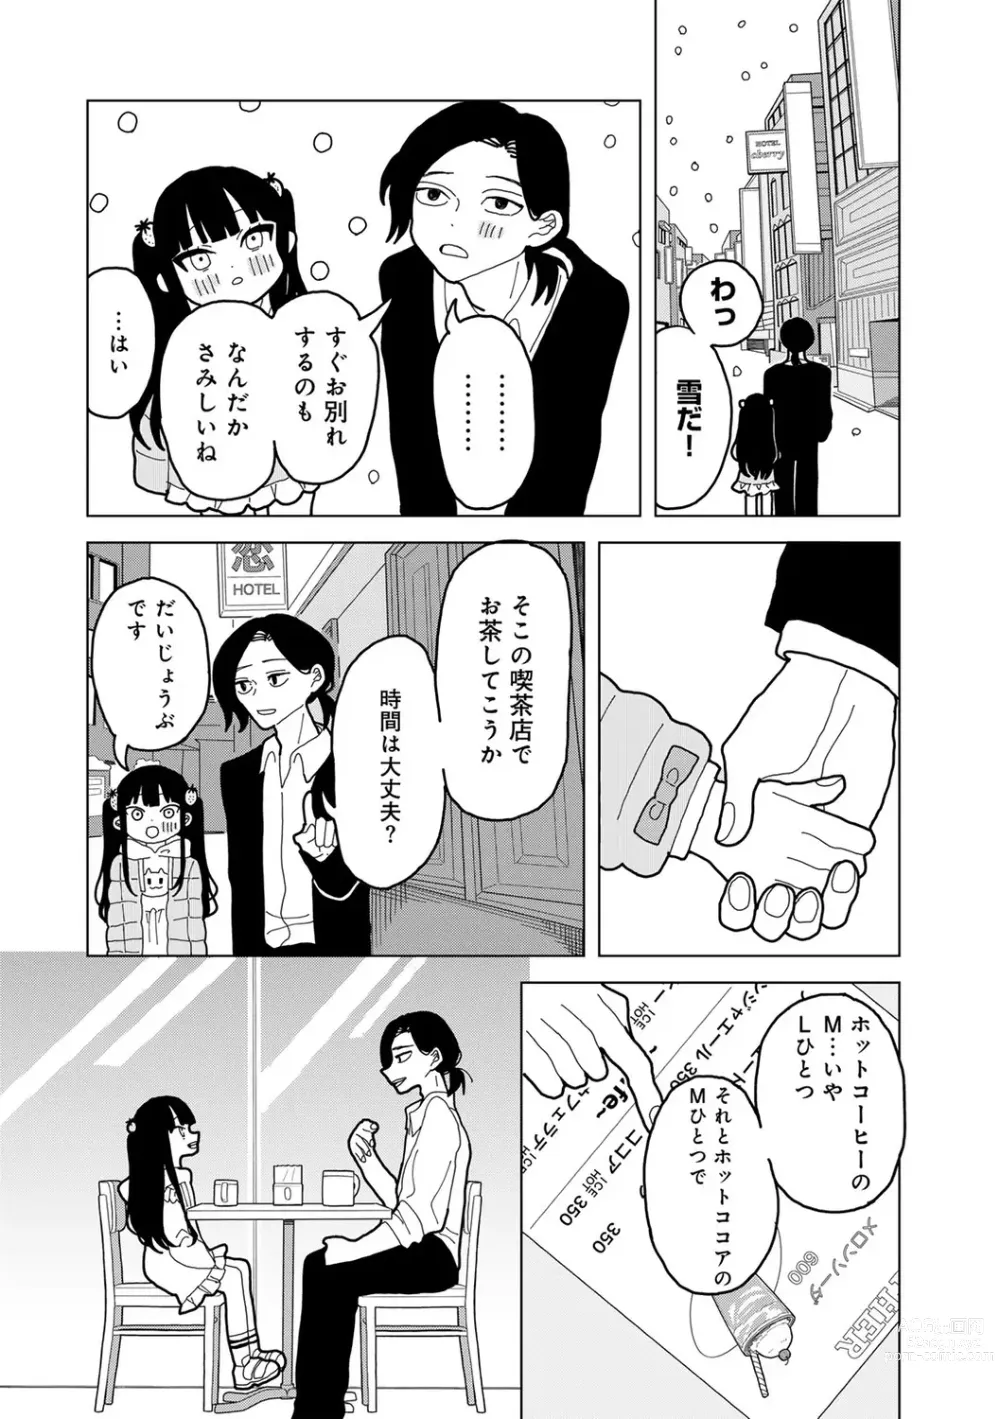 Page 194 of manga COMIC kisshug vol.3